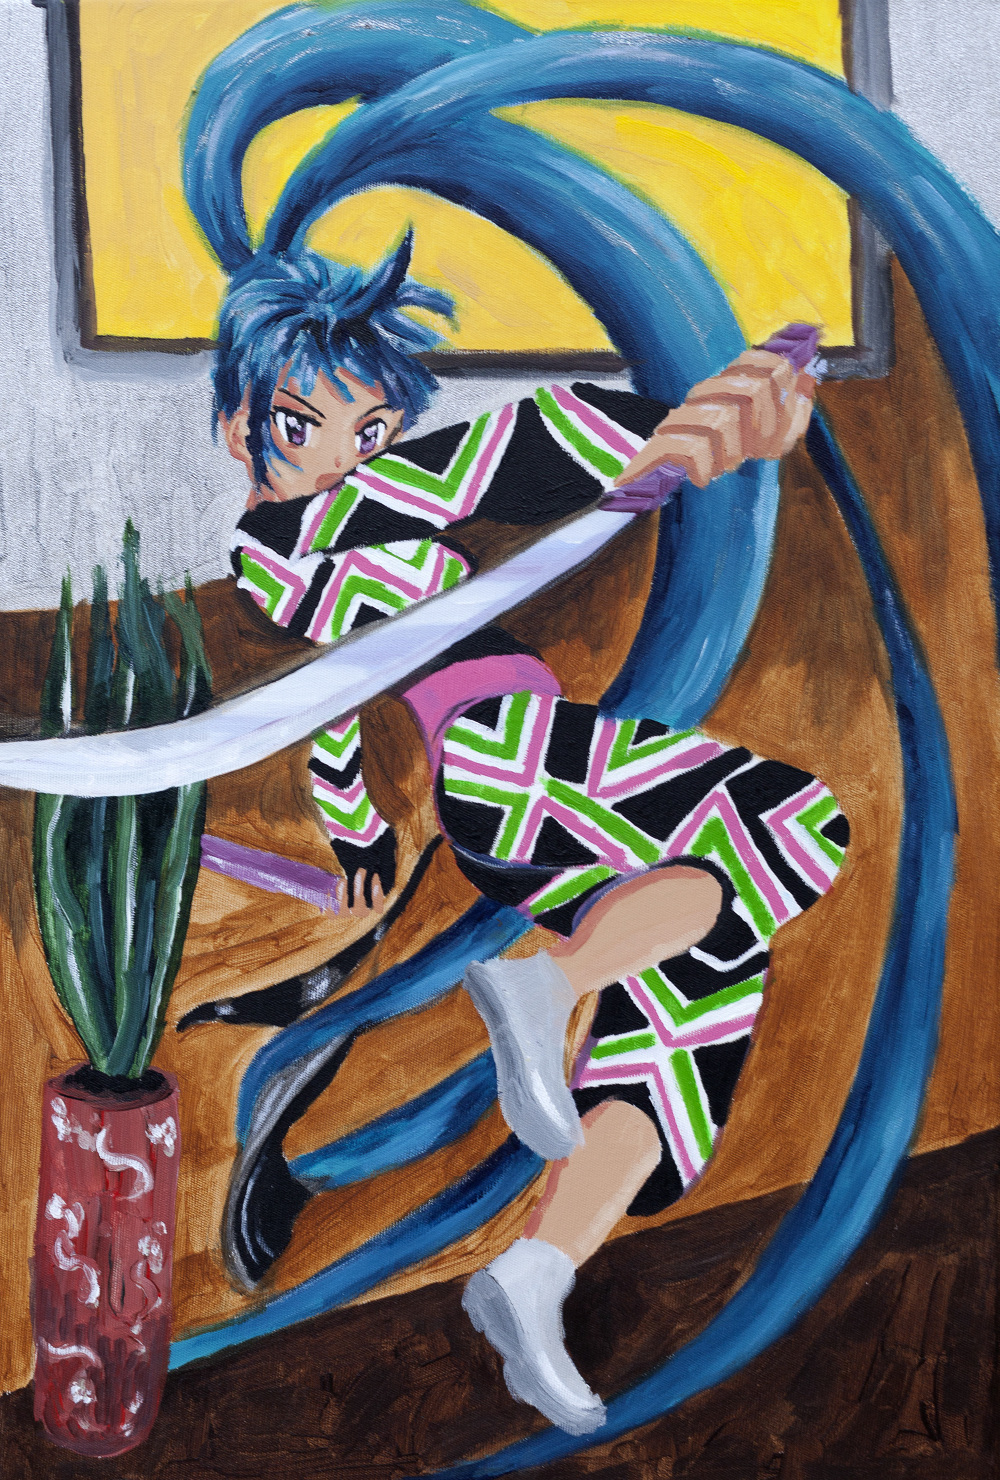 Pintura rectangular con una imagen de una mujer en actitud de lucha con una espada. Realizada por la artista Fátima Pecci Carou